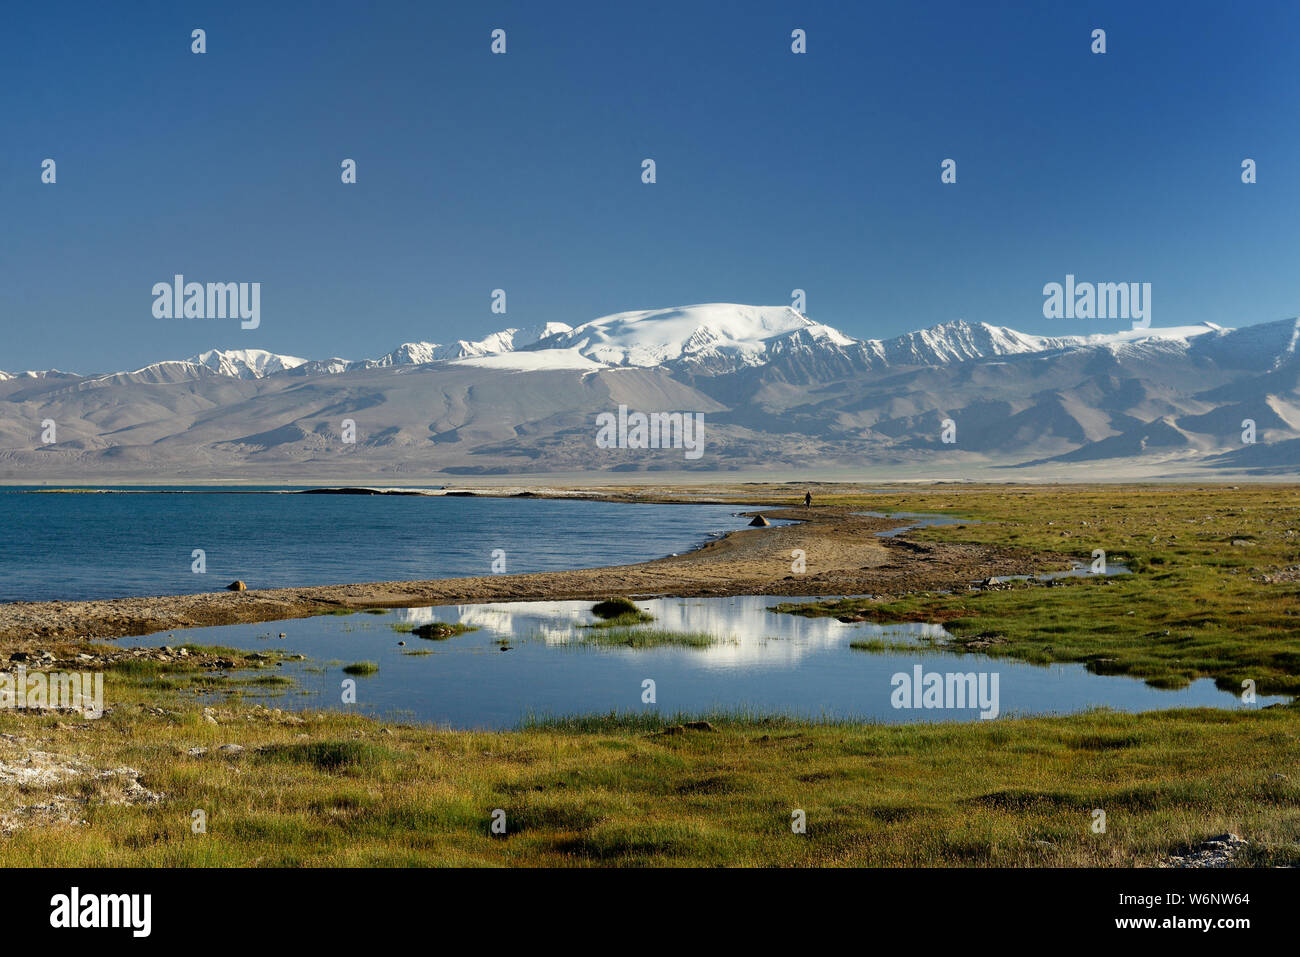 El hermoso lago Karakul por la Pamir highway. Vista sobre el lago y el pico Lenin cerca de Karakul Village, en el Pamir, Tayikistán, en Asia Central. Foto de stock